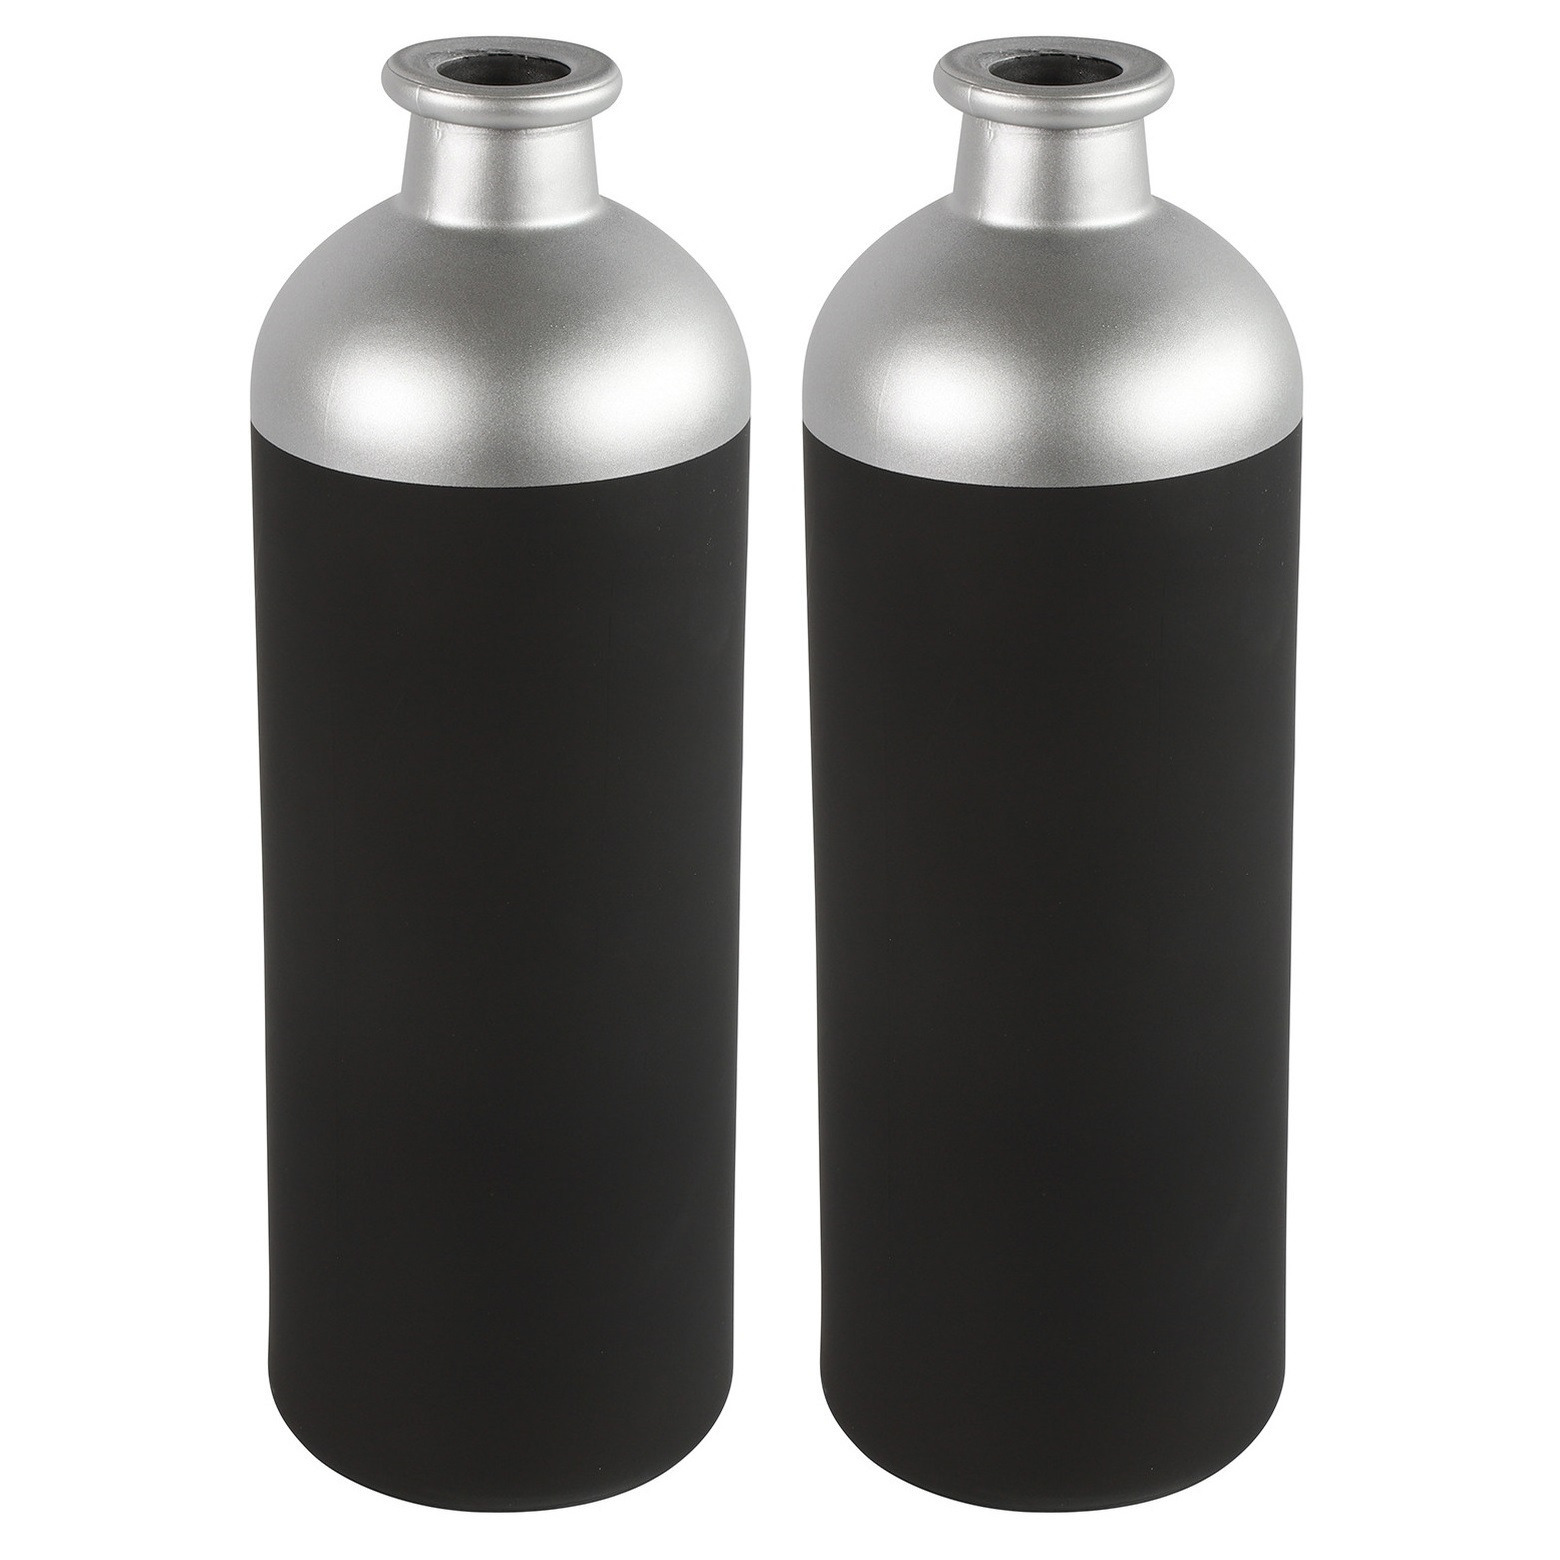 Countryfield Bloemen-deco vaas zwart-zilver glas D11 x H33 cm